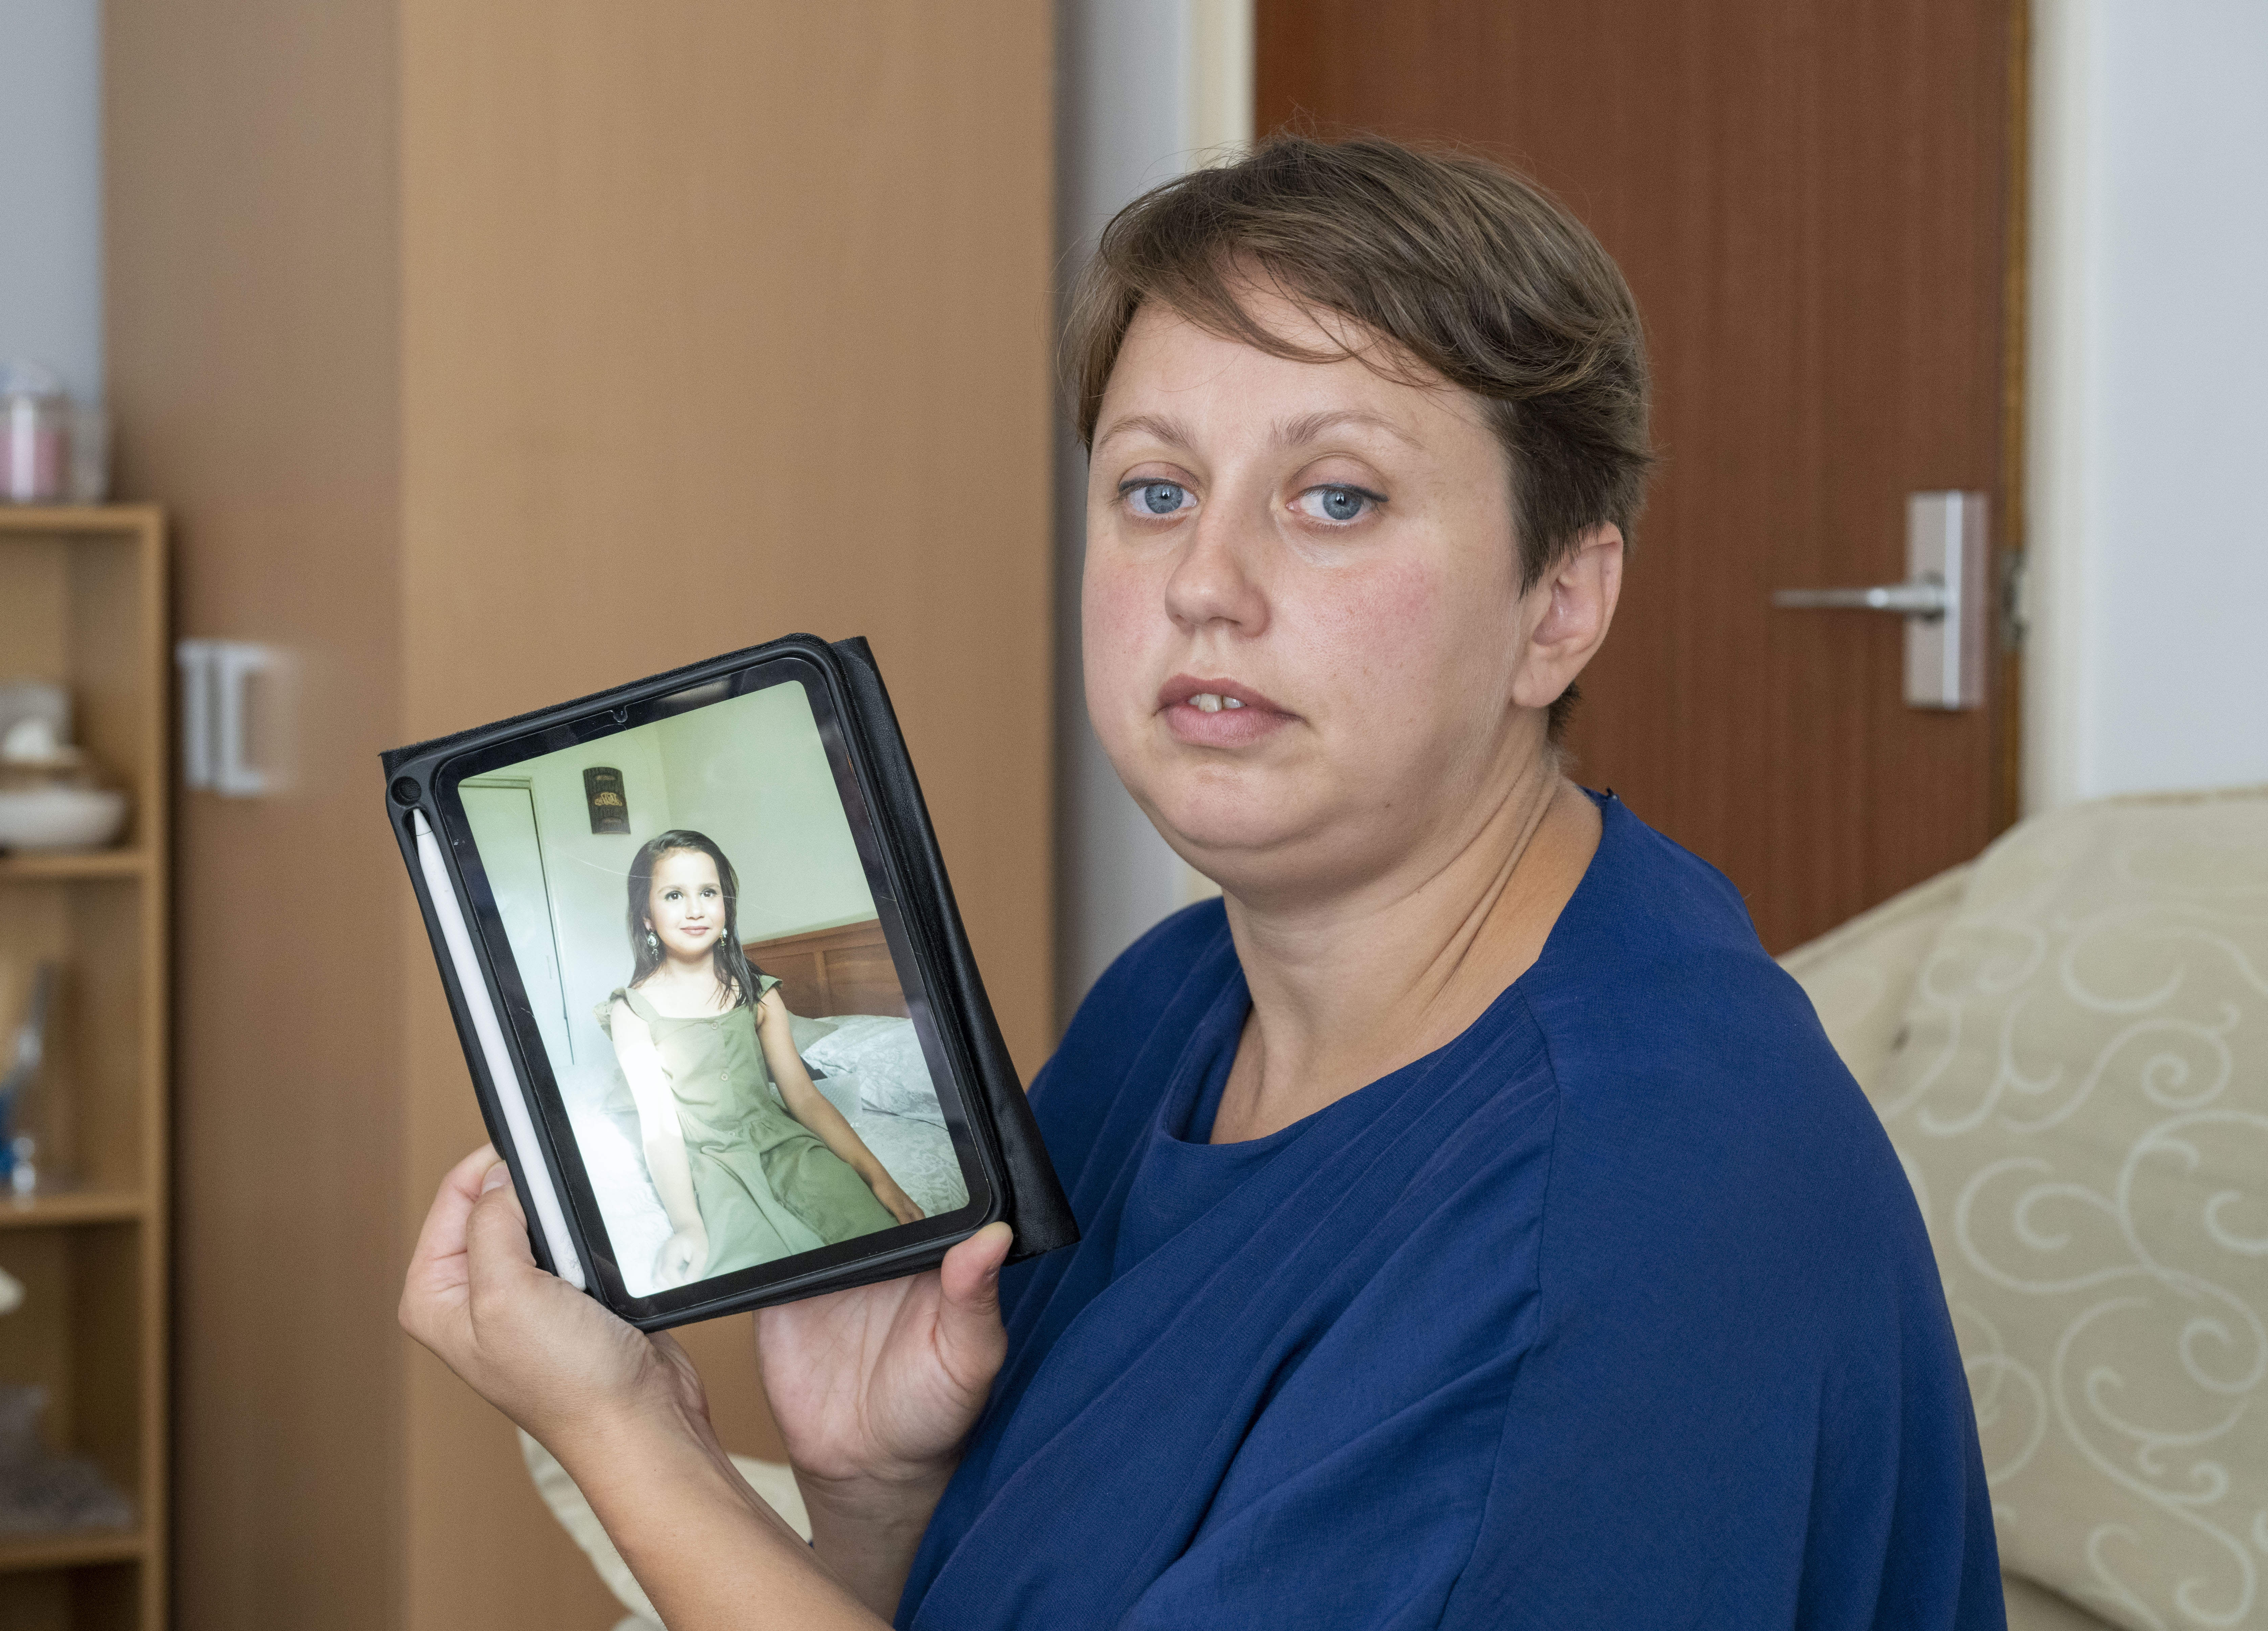 Saras Mutter Olga Sharif versuchte verzweifelt, ihren Ex-Mann anzurufen